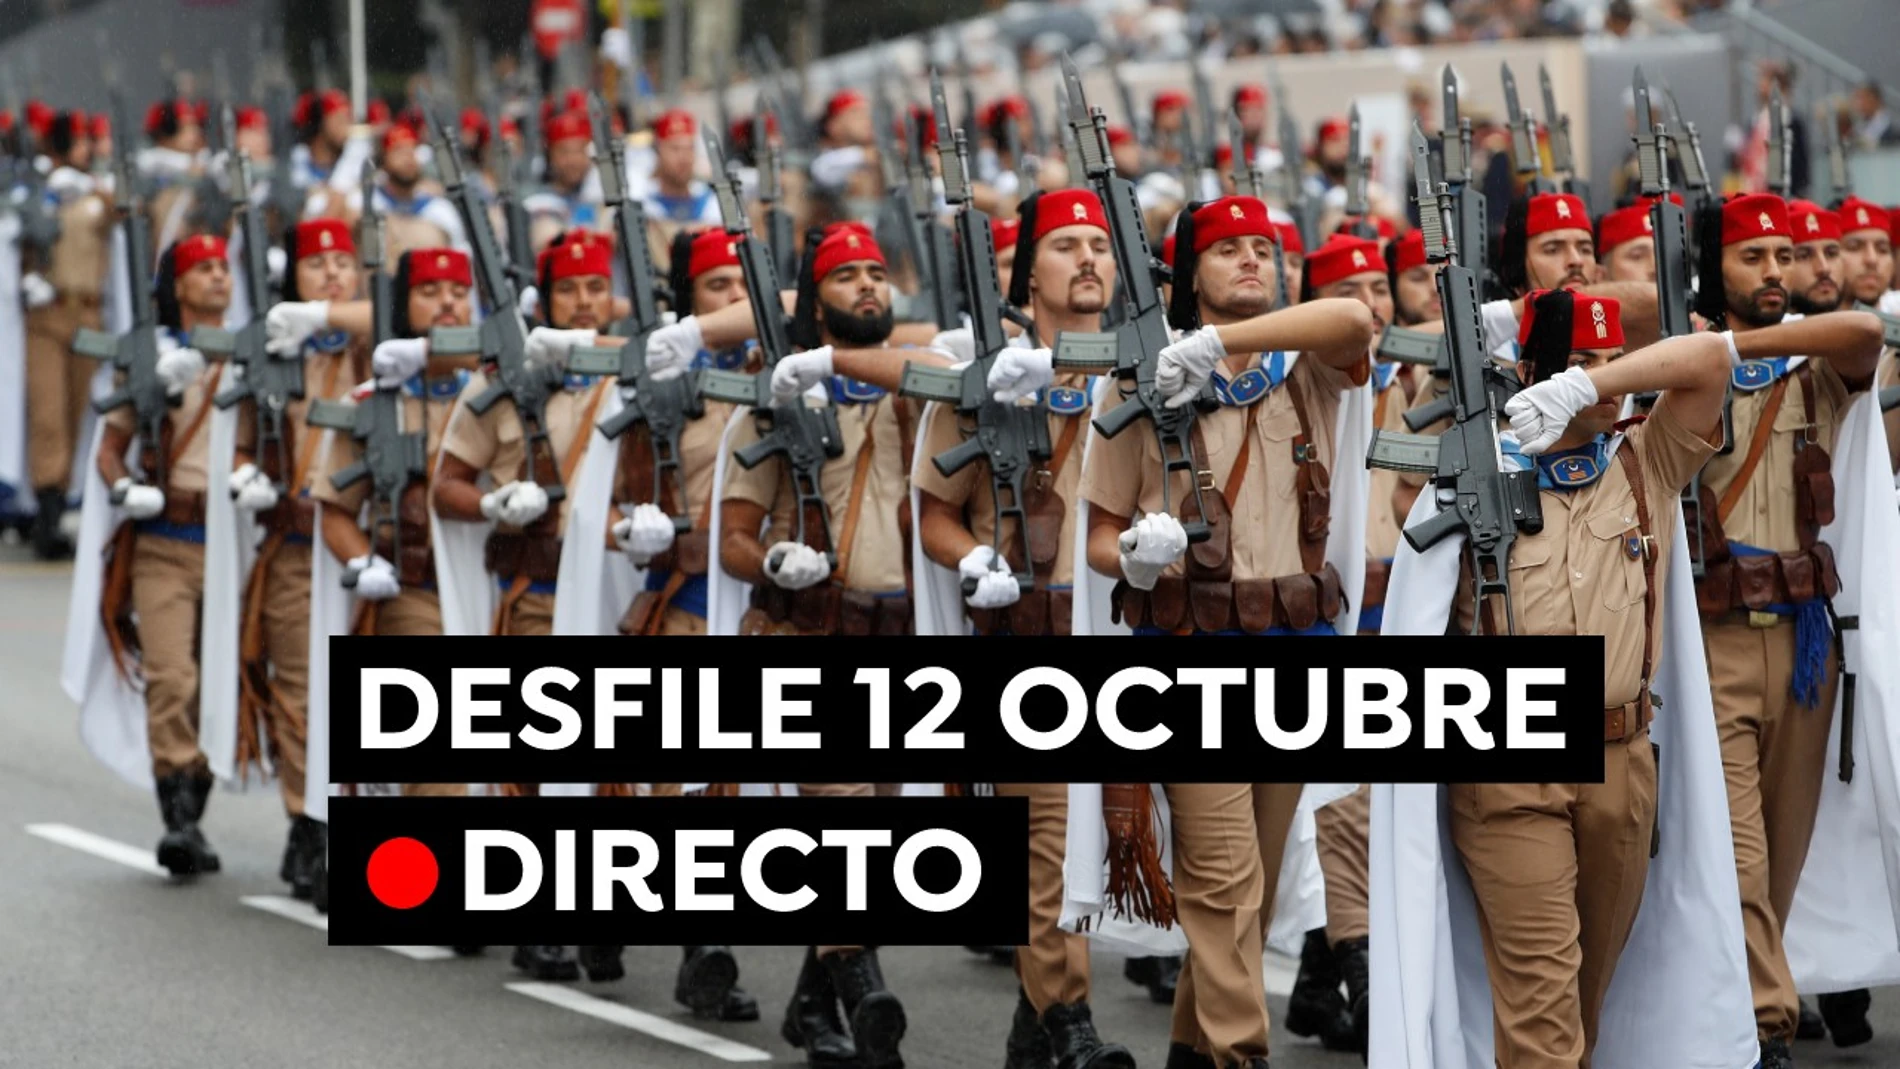 Desfile del 12 de octubre en directo: Última hora del Día de la Hispanidad, horario y recorrido